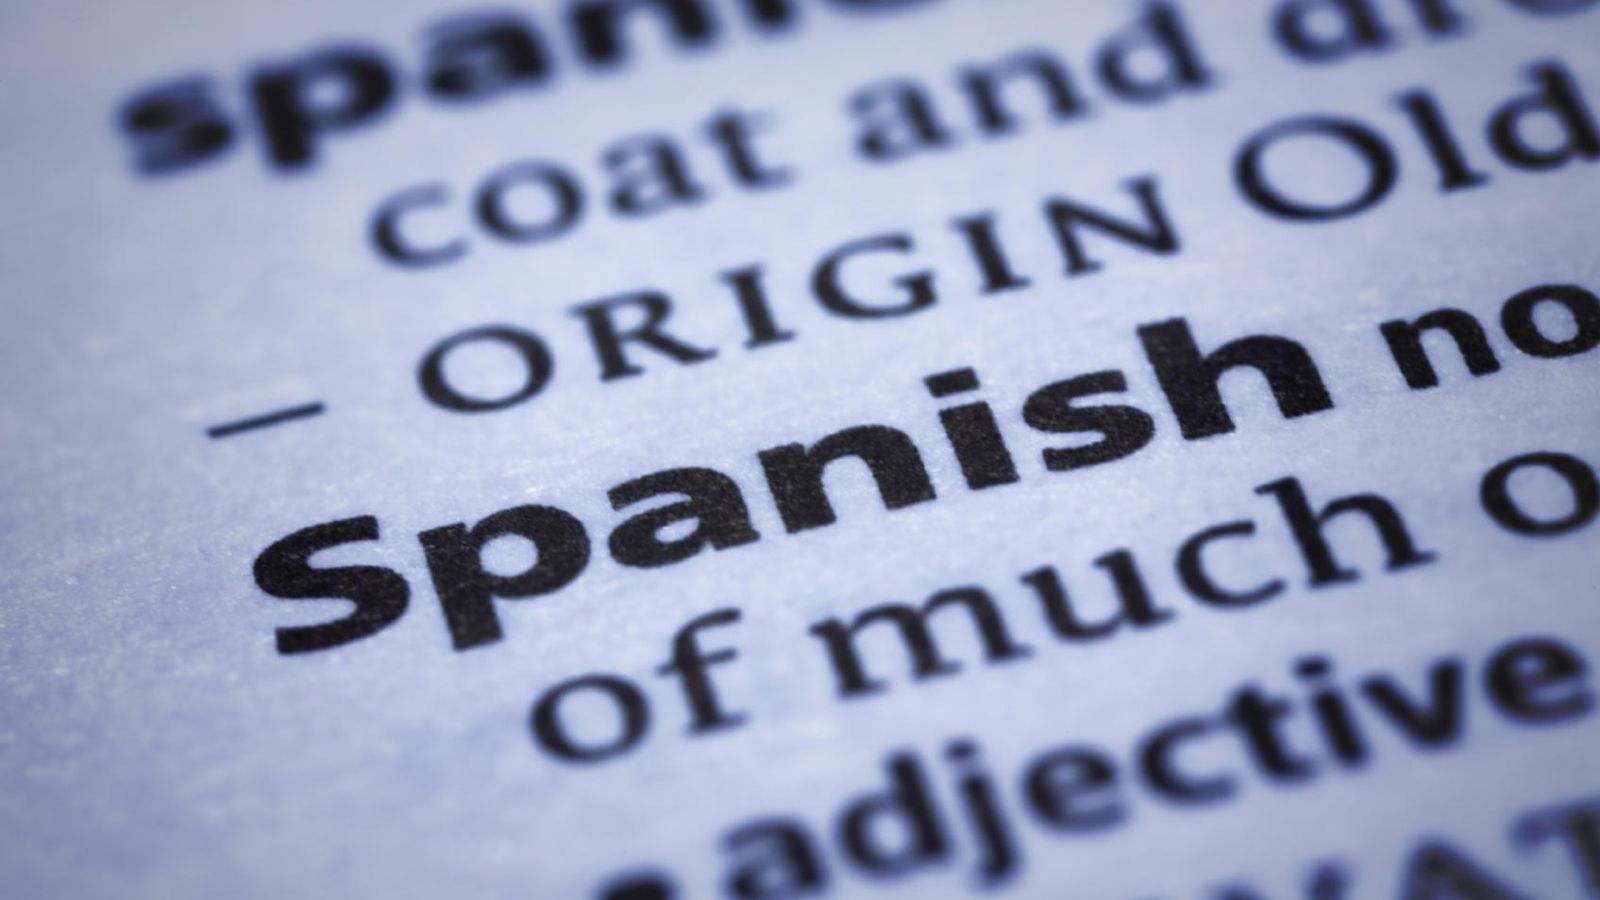 Foto: Los autores recuerdan que internacionalmente, para nombrar a nuestro idioma se suele emplear el equivalente a "español". (iStock)